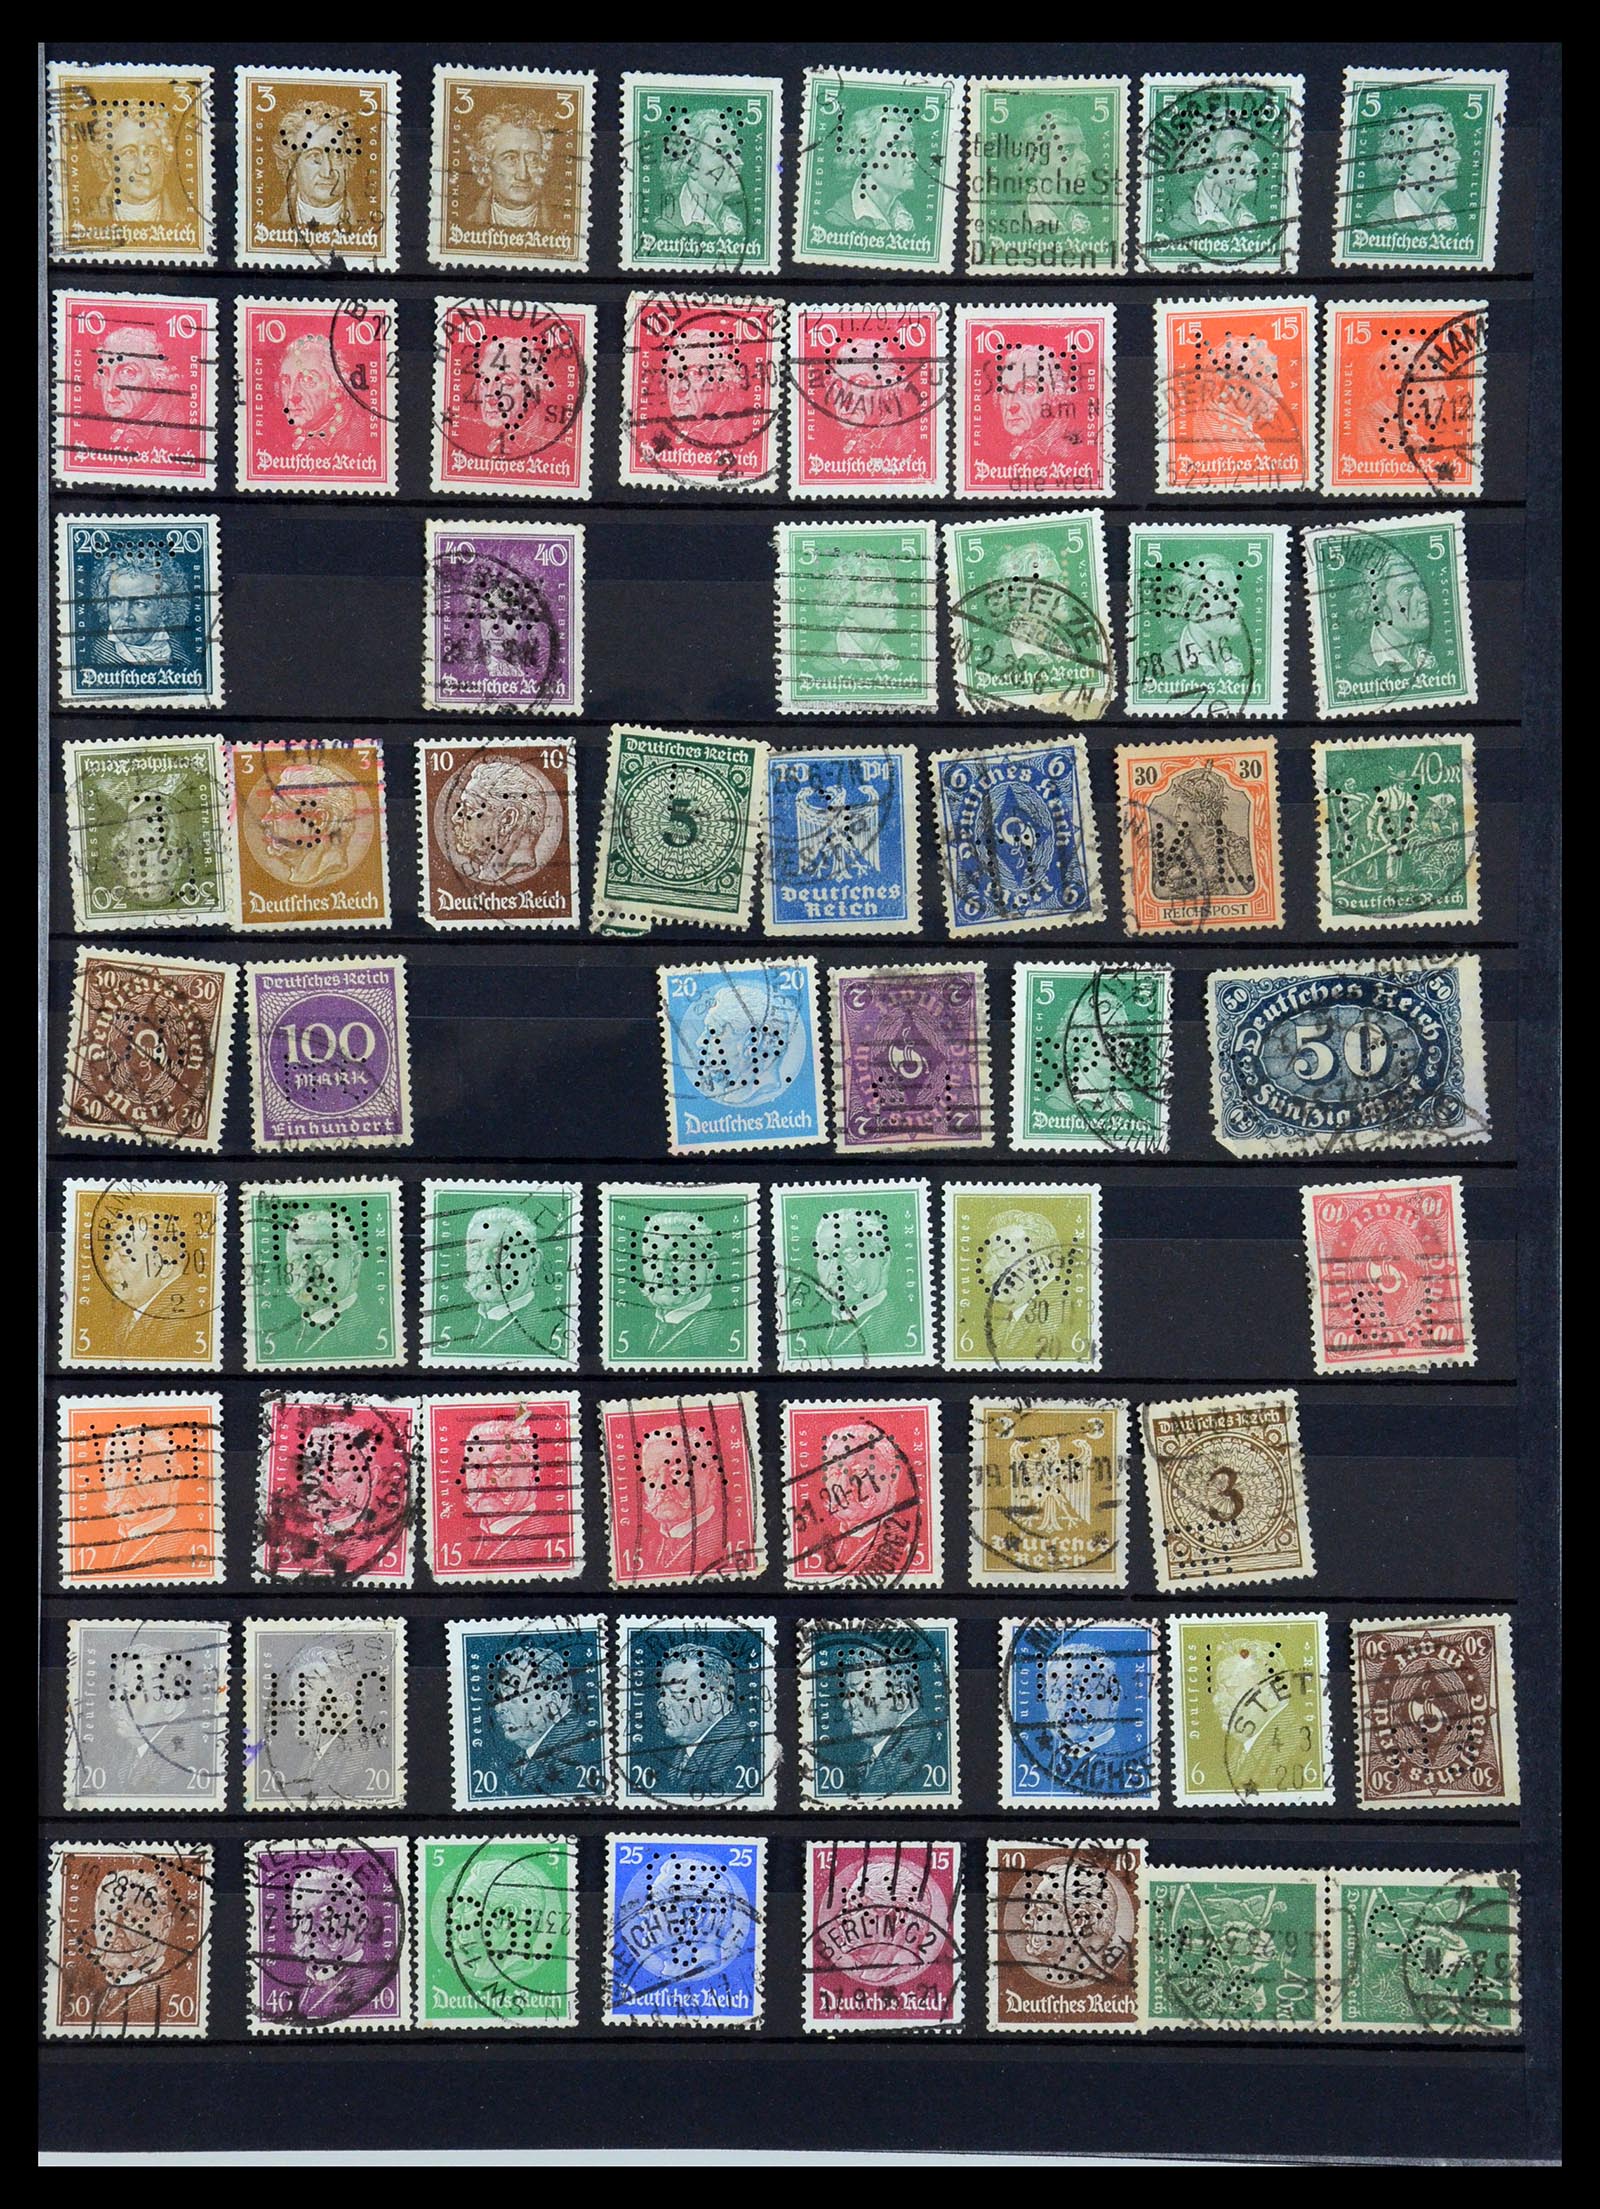 35183 027 - Stamp Collection 35183 German Reich perfins 1880-1945.